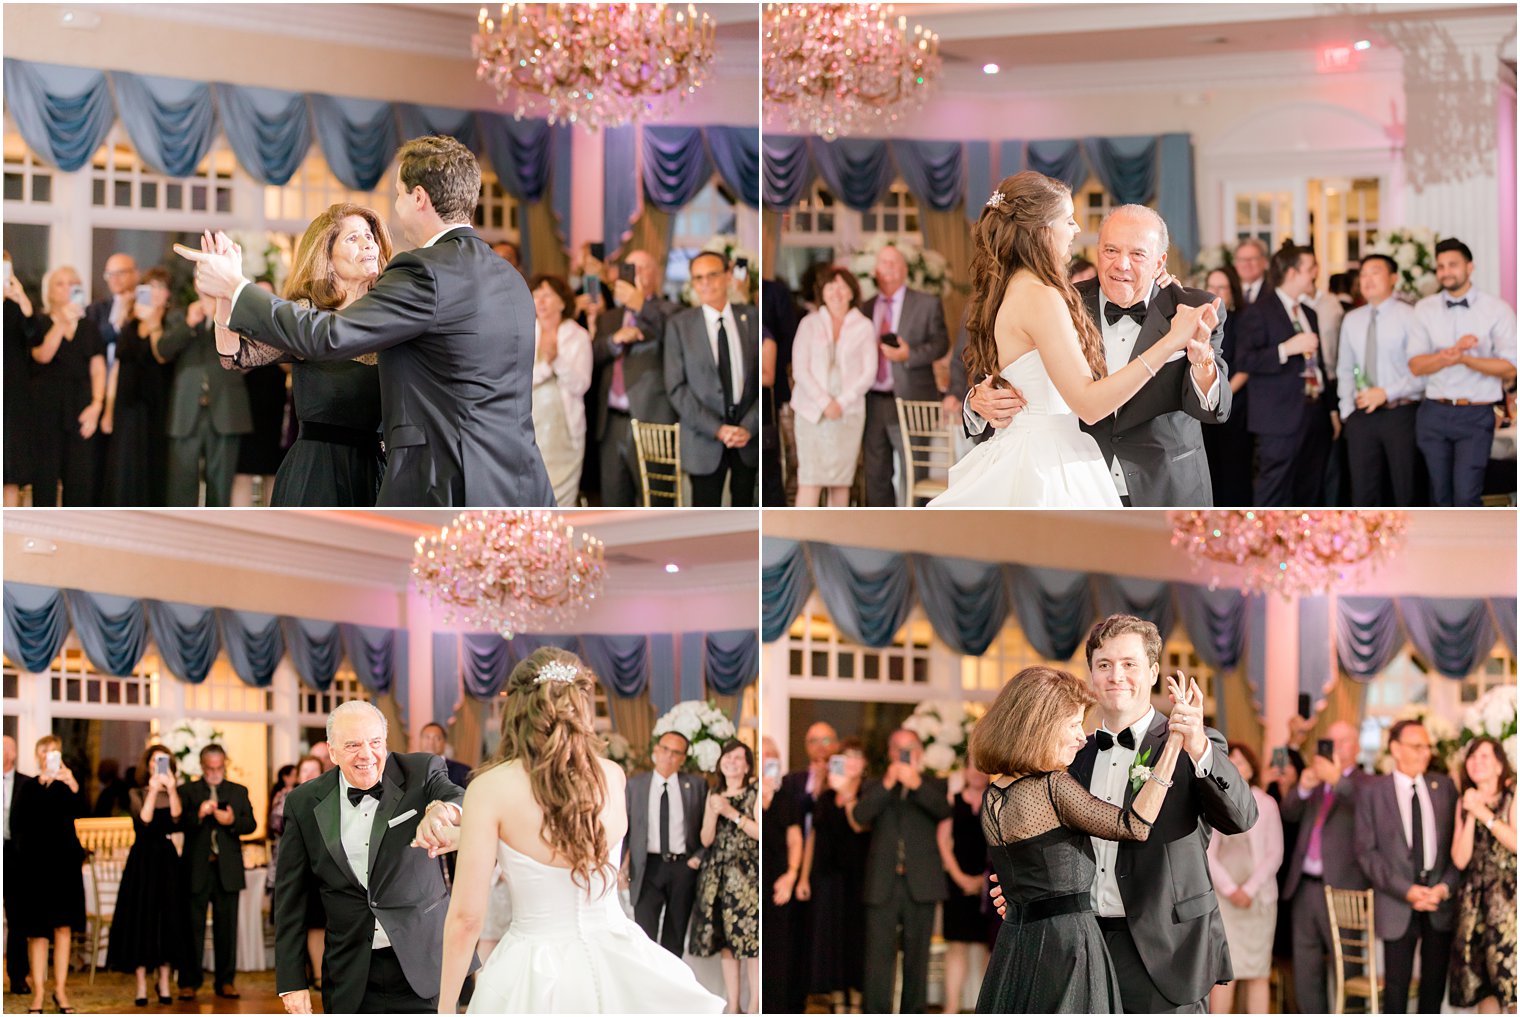 parent dances with newlyweds at Farmingdale NJ wedding reception